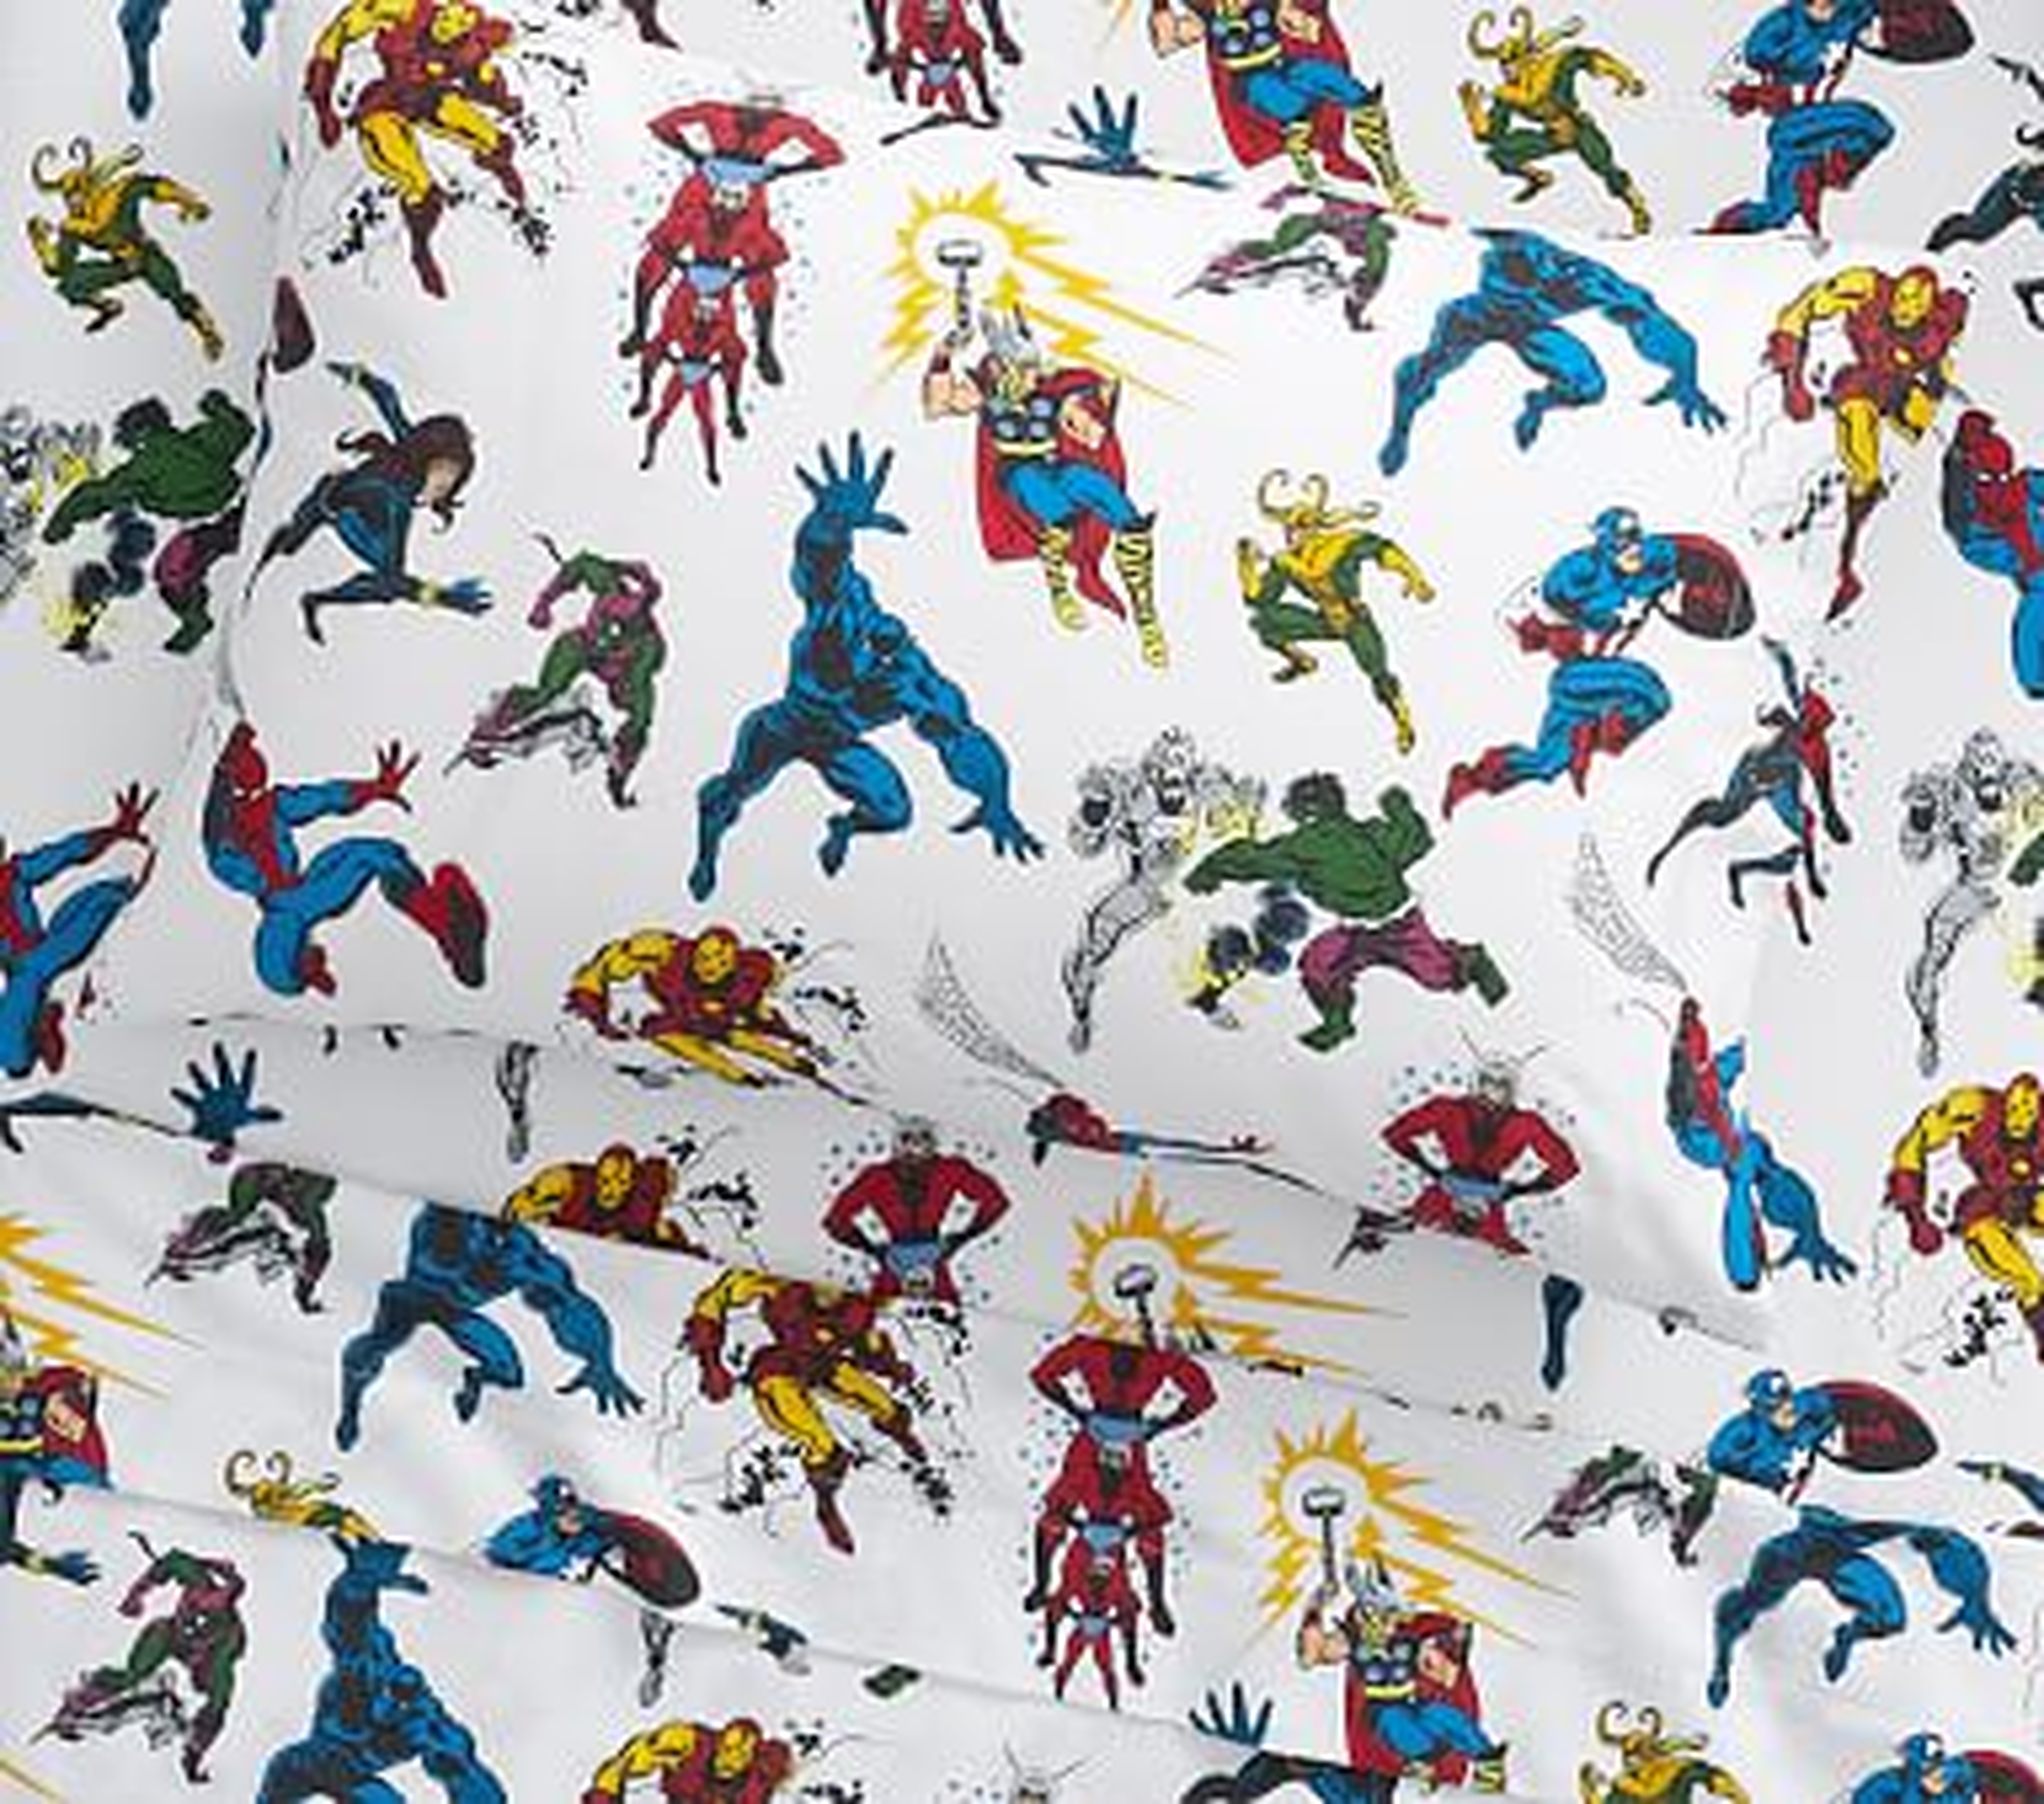 Glow-in-the-Dark Marvel Heroes Sheet Set, Sheet Set, Twin, Multi - Pottery Barn Kids